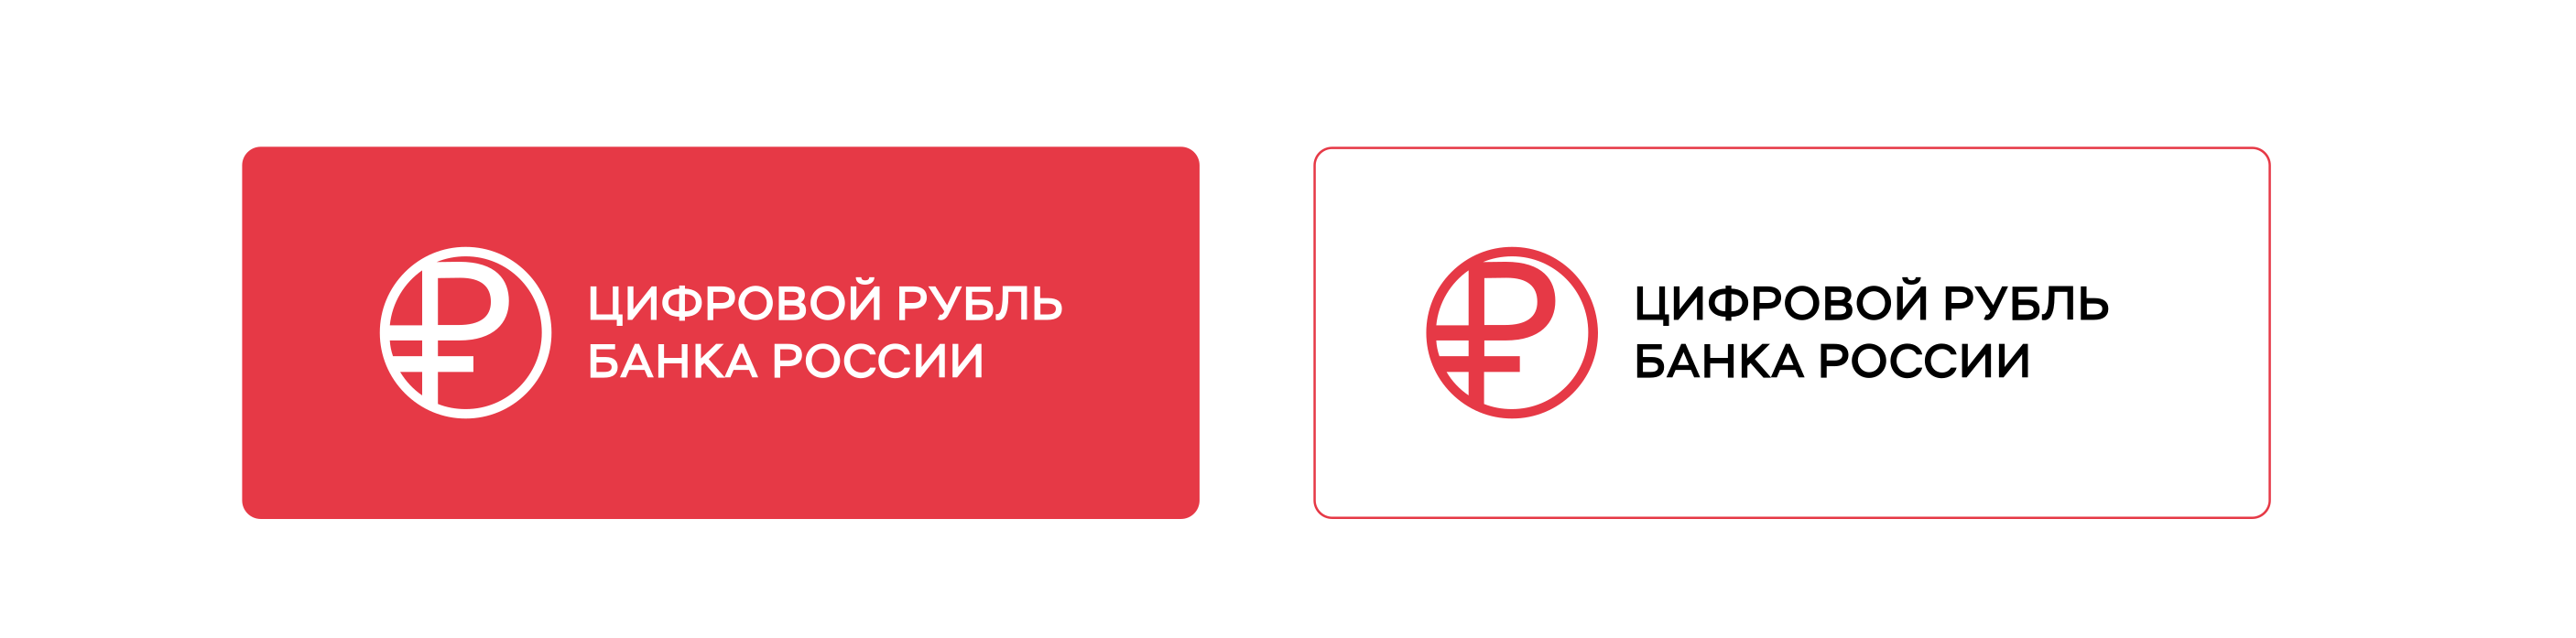 Логотип цифрового рубля Банка России выполнен в виде окружности с вписанным в нее символом рубля. Фирменный кораллово-алый&nbsp;цвет&nbsp;используется как основной цвет фона для логотипа